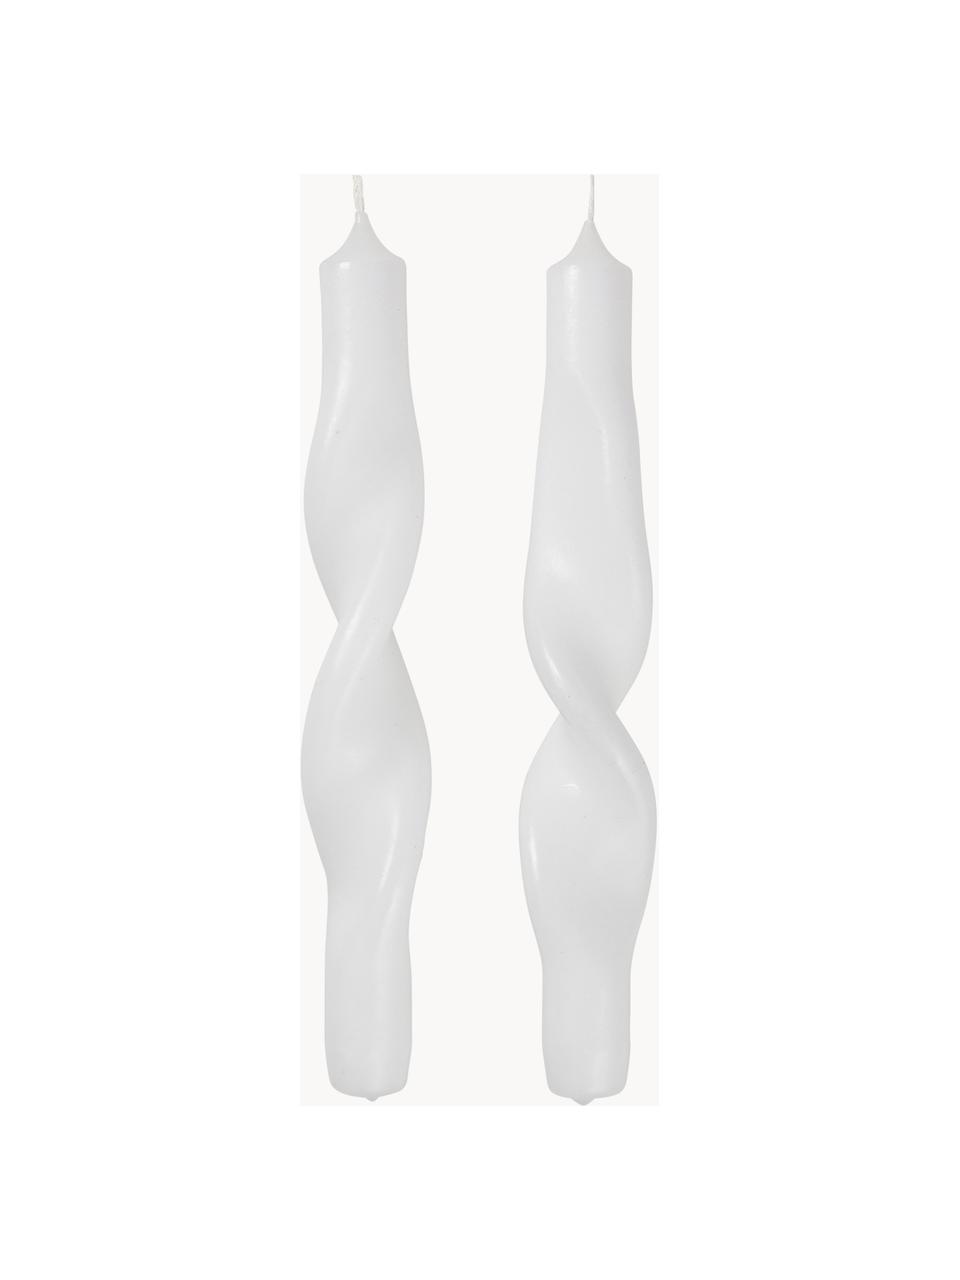 Chandelles Twist, 2 pièces, Paraffine, Blanc, haut. 23 cm